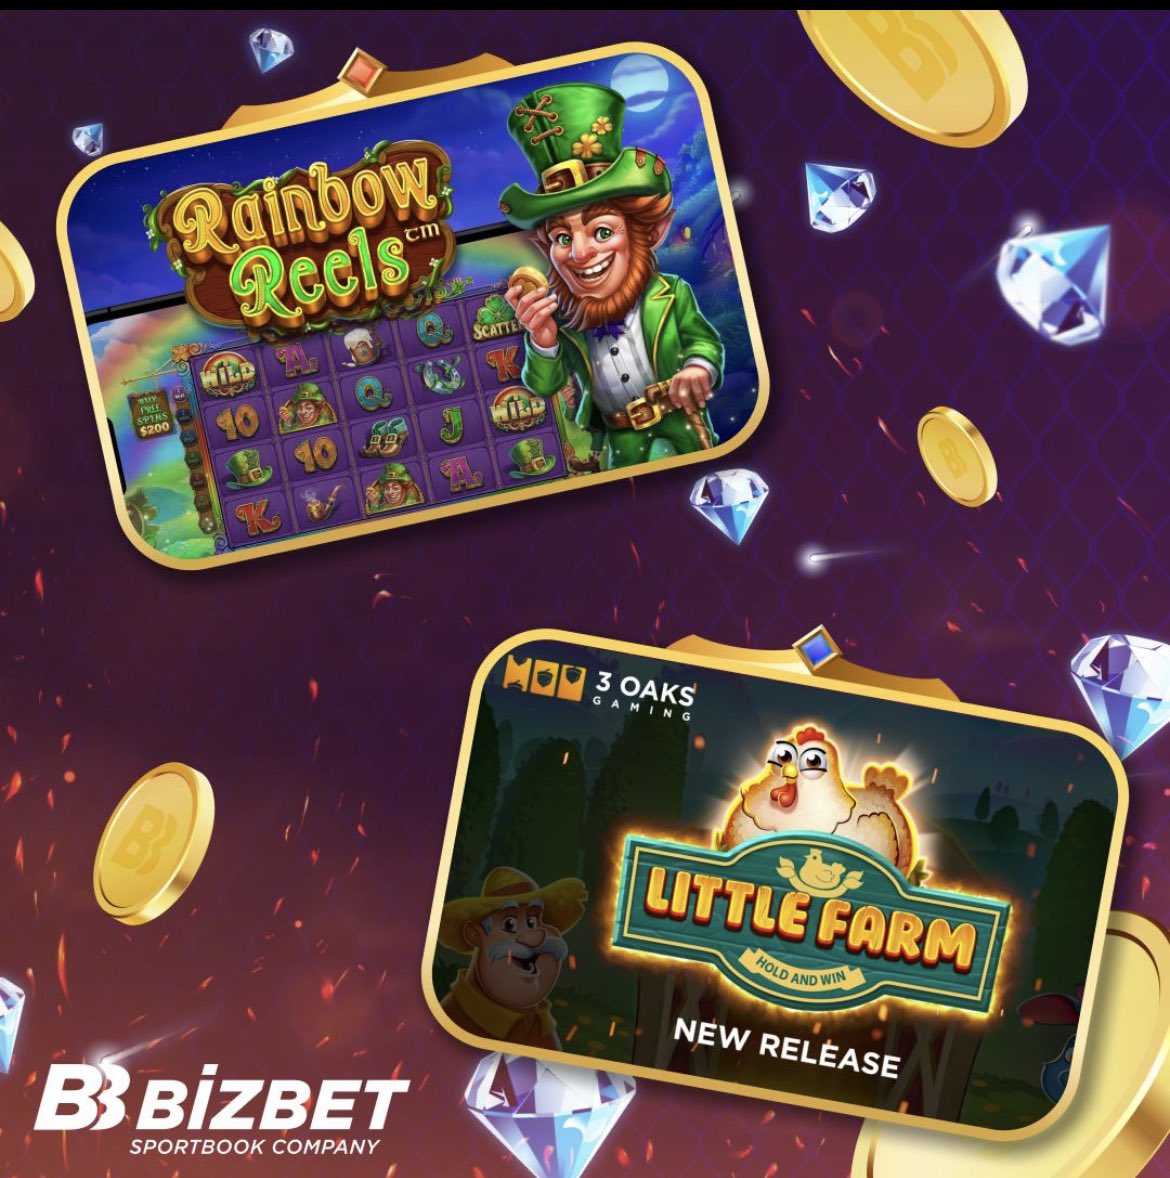 Bu hafta yeni slot oyunları büyük ilgi görüyor! Nedenini öğren!

🎰 Dragon knıght - Barbarabang 
🎰 Candy Blıtz - Pragmatic 
🎰 Rainbow Reels - Pragmatic 
🎰 Little Farm - 3 Oaks gaming

Tüm hafta boyunca oyuncular kolayca para kazandı.
bitly.ws/BM5u